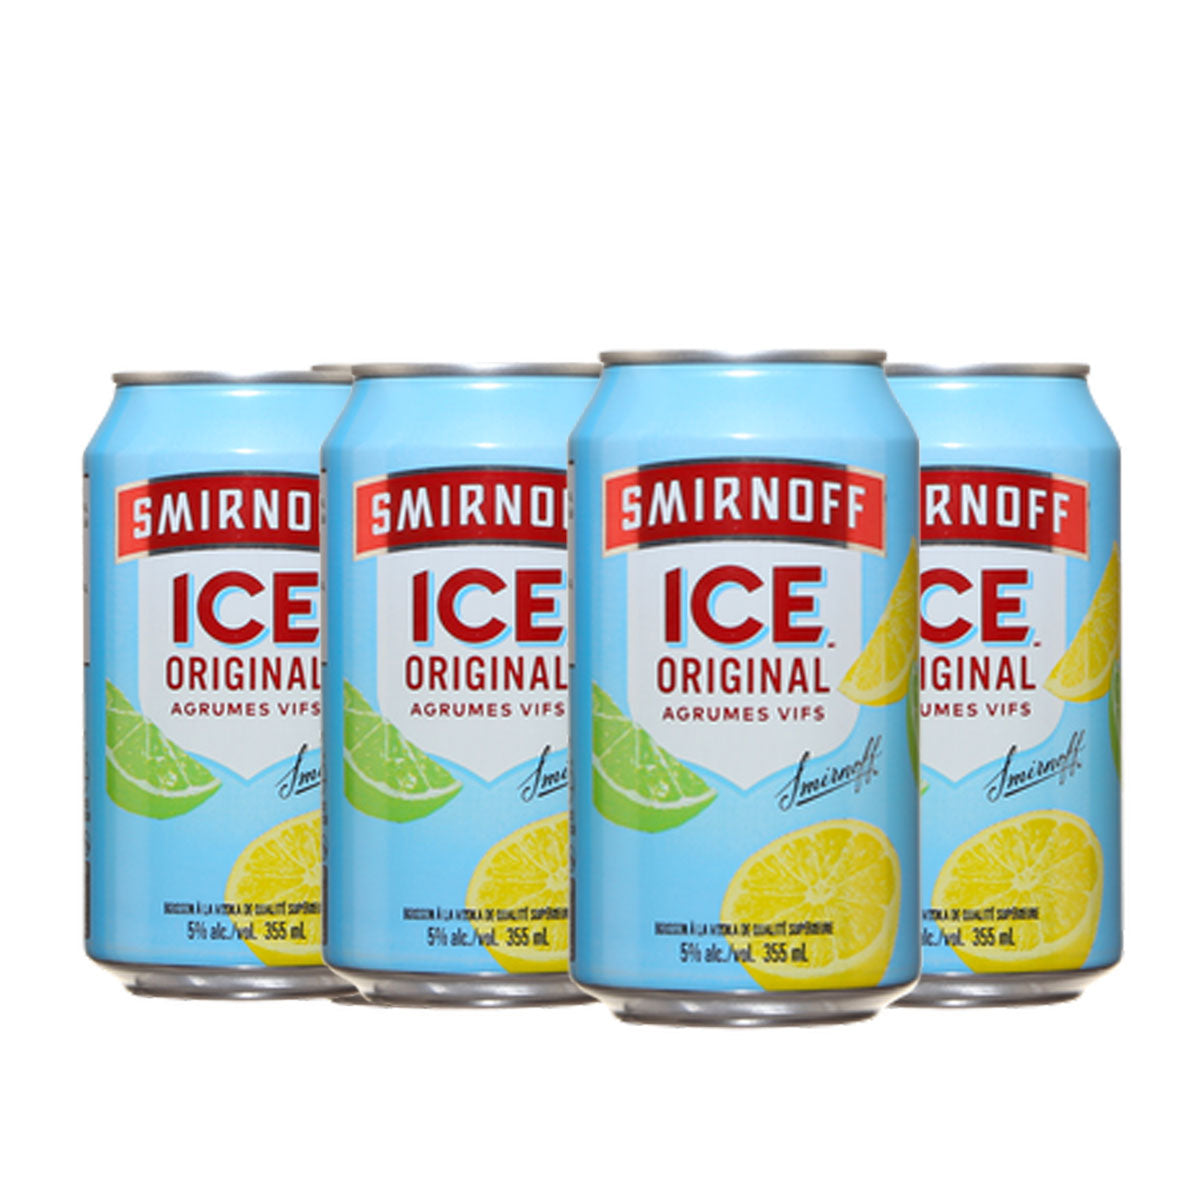 TAG Liquor Stores BC - Smirnoff Ice Original 6 Pack Cans